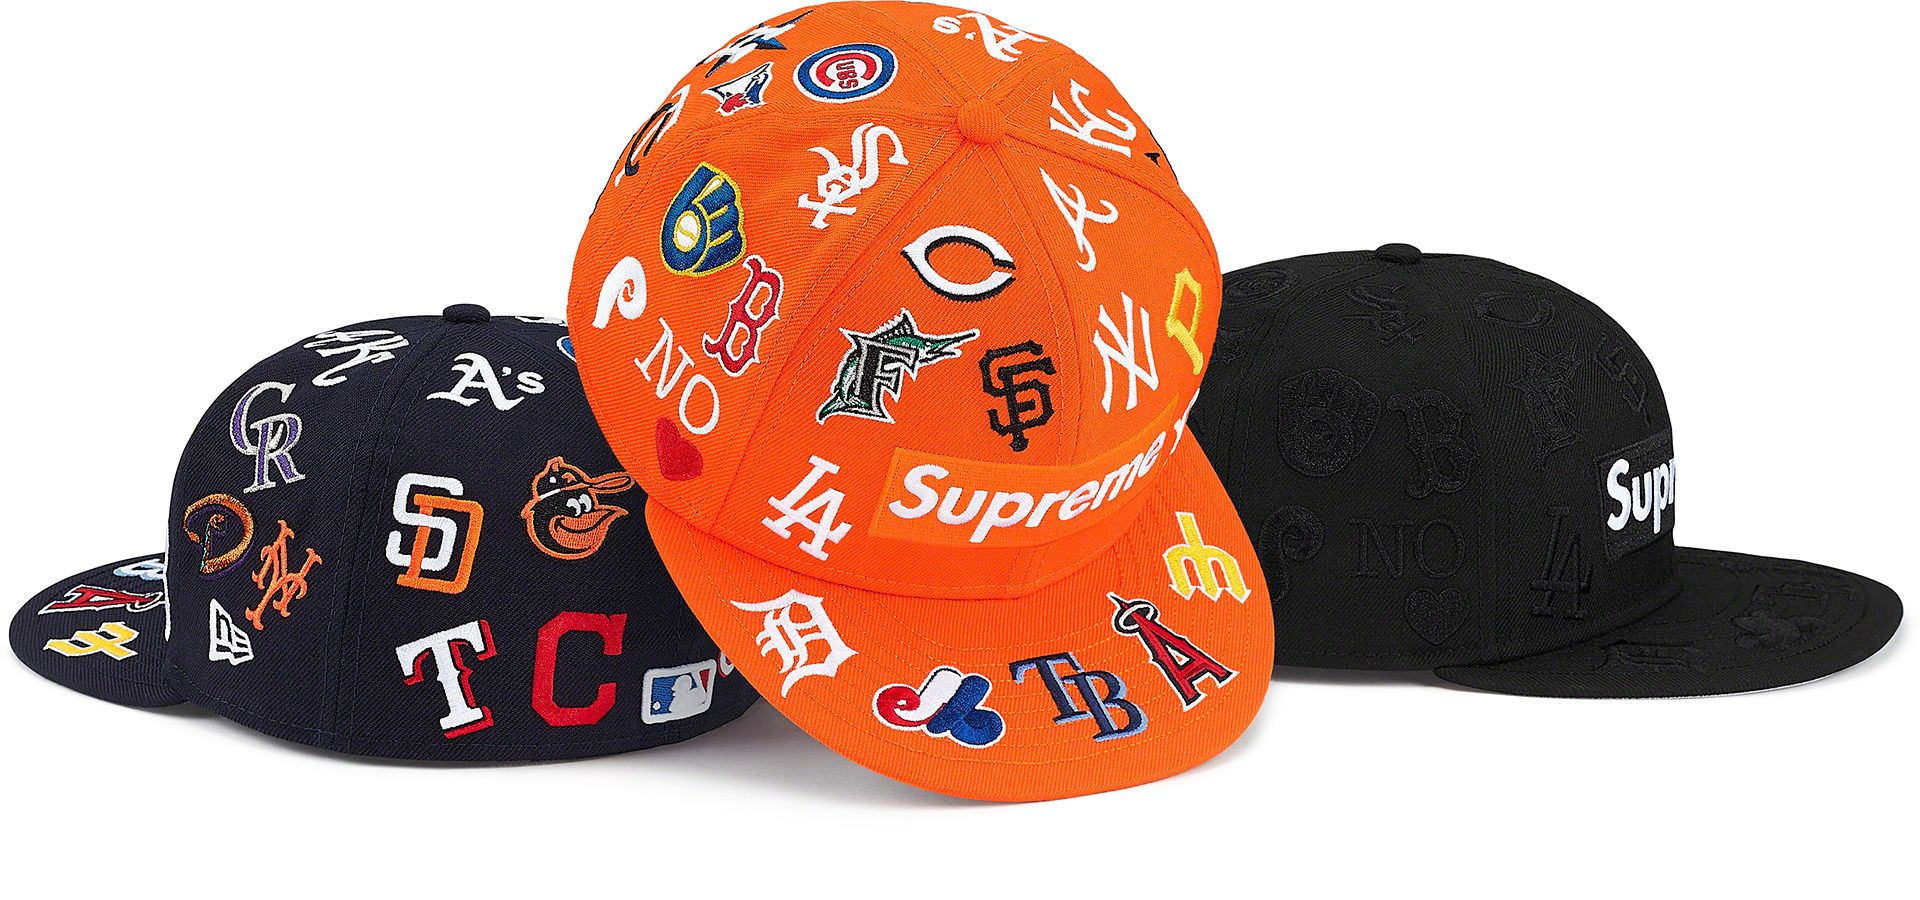 【在庫高品質】Supreme MLB New Era 帽子